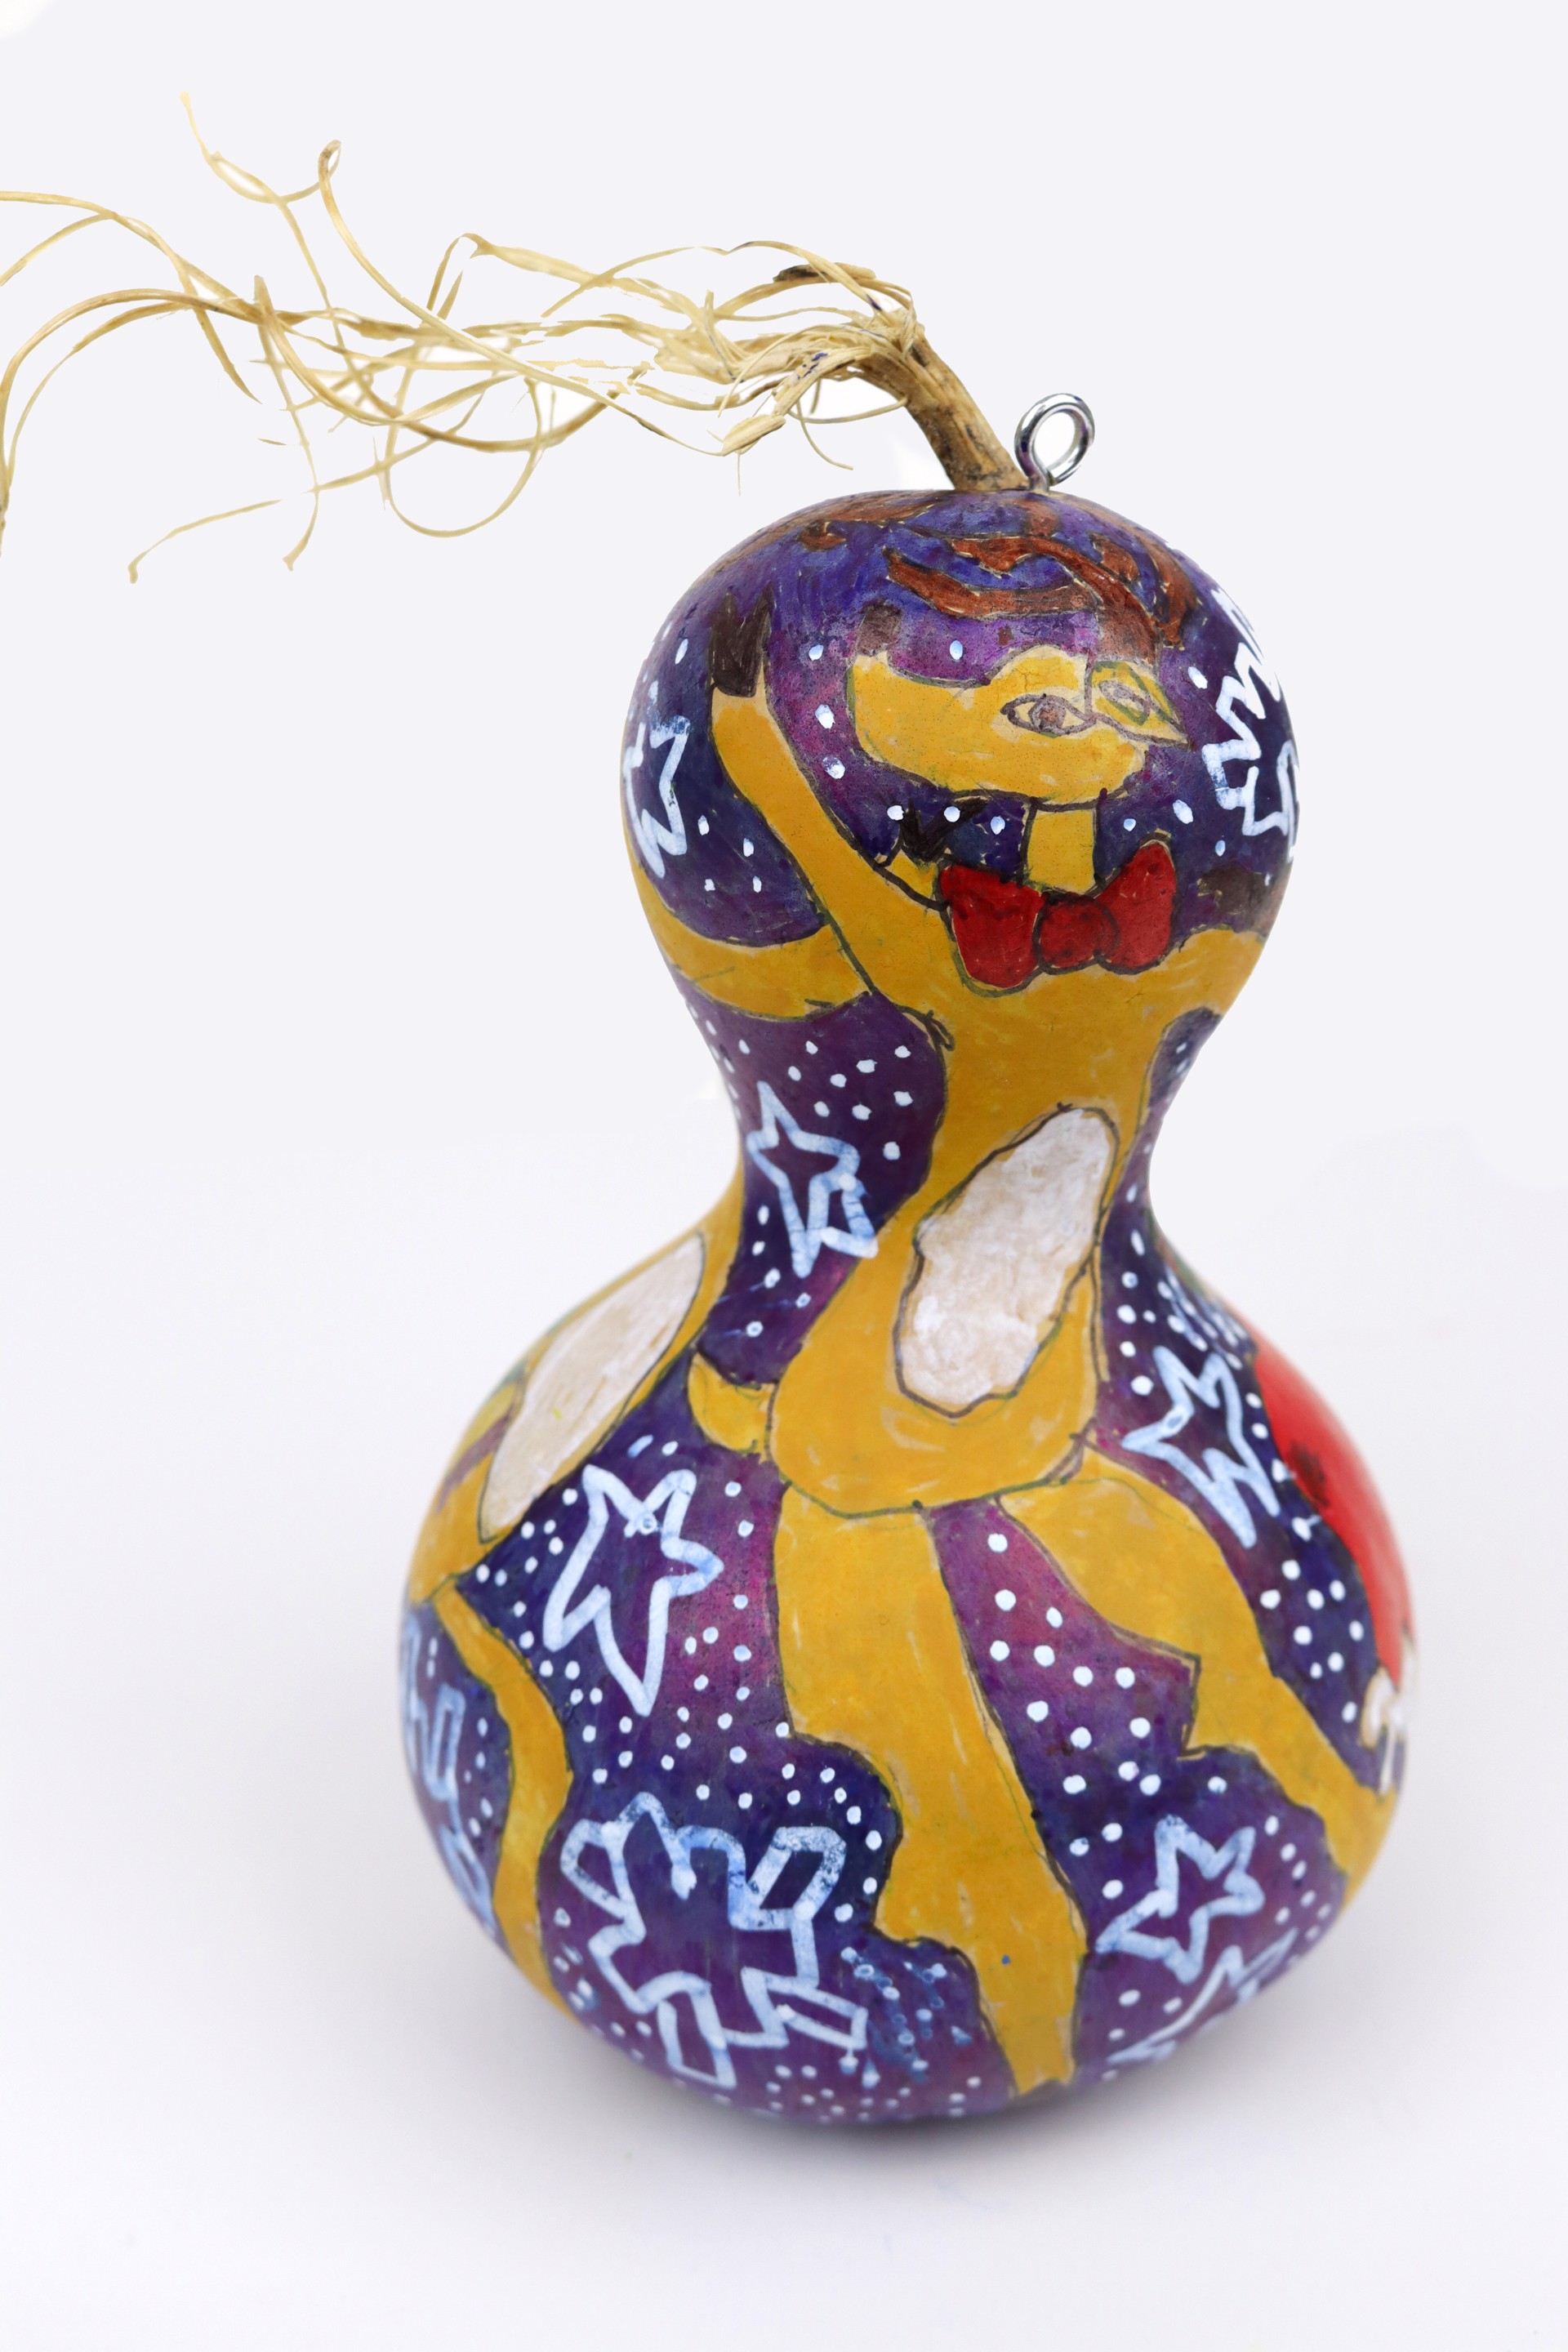 Dancing Reindeer (gourd ornament) by Vanessa Monroe